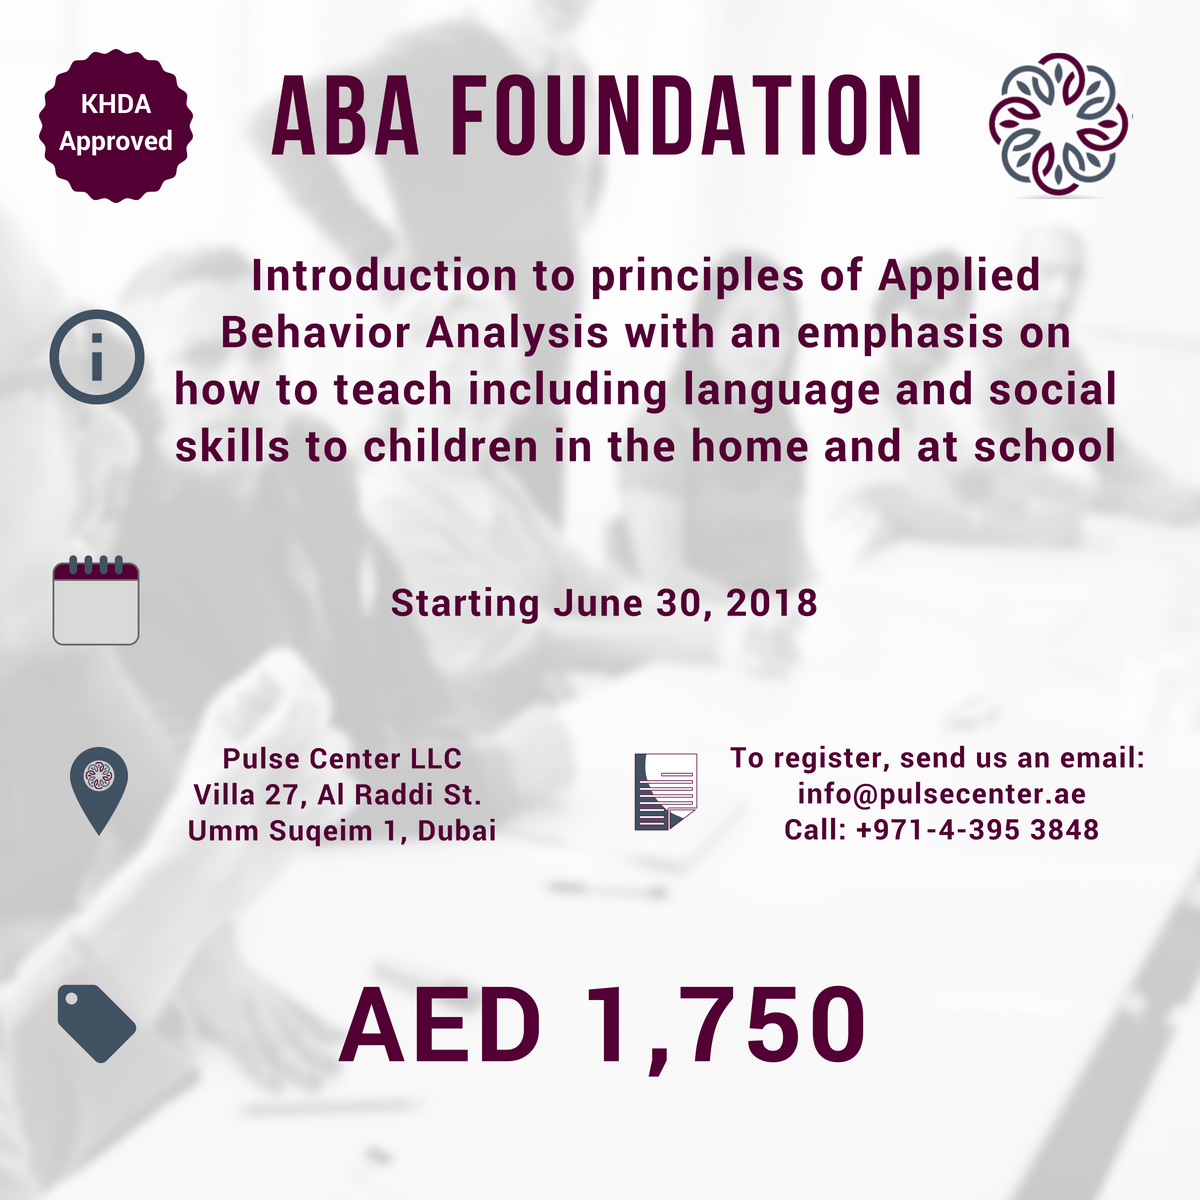 ABA Foundation Training